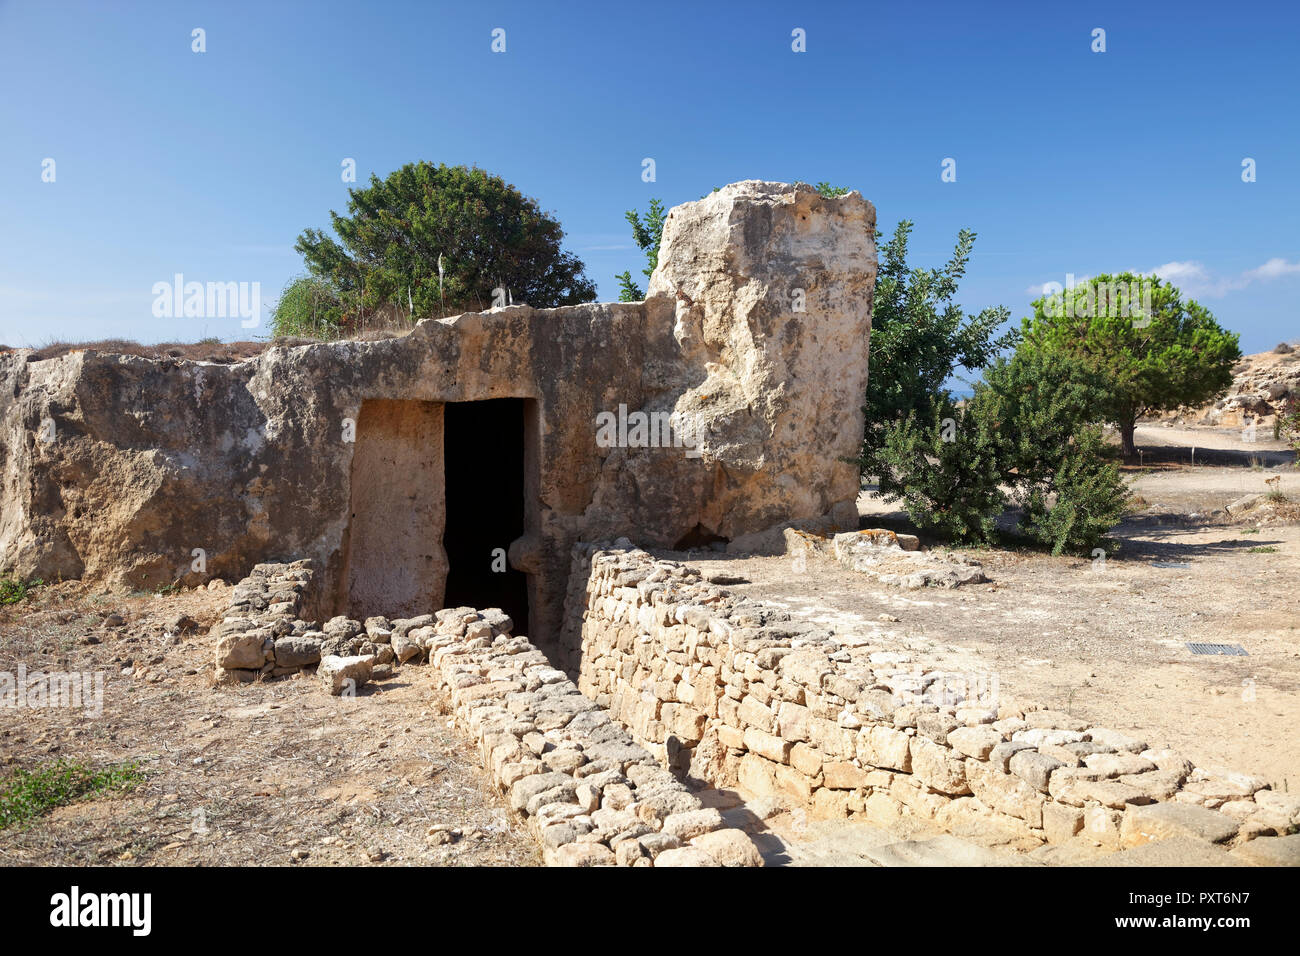 Site de fouilles archéologiques, des tombes royales de Nea Paphos, nécropole de l'antiquité romaine, République de Chypre, Chypre Banque D'Images